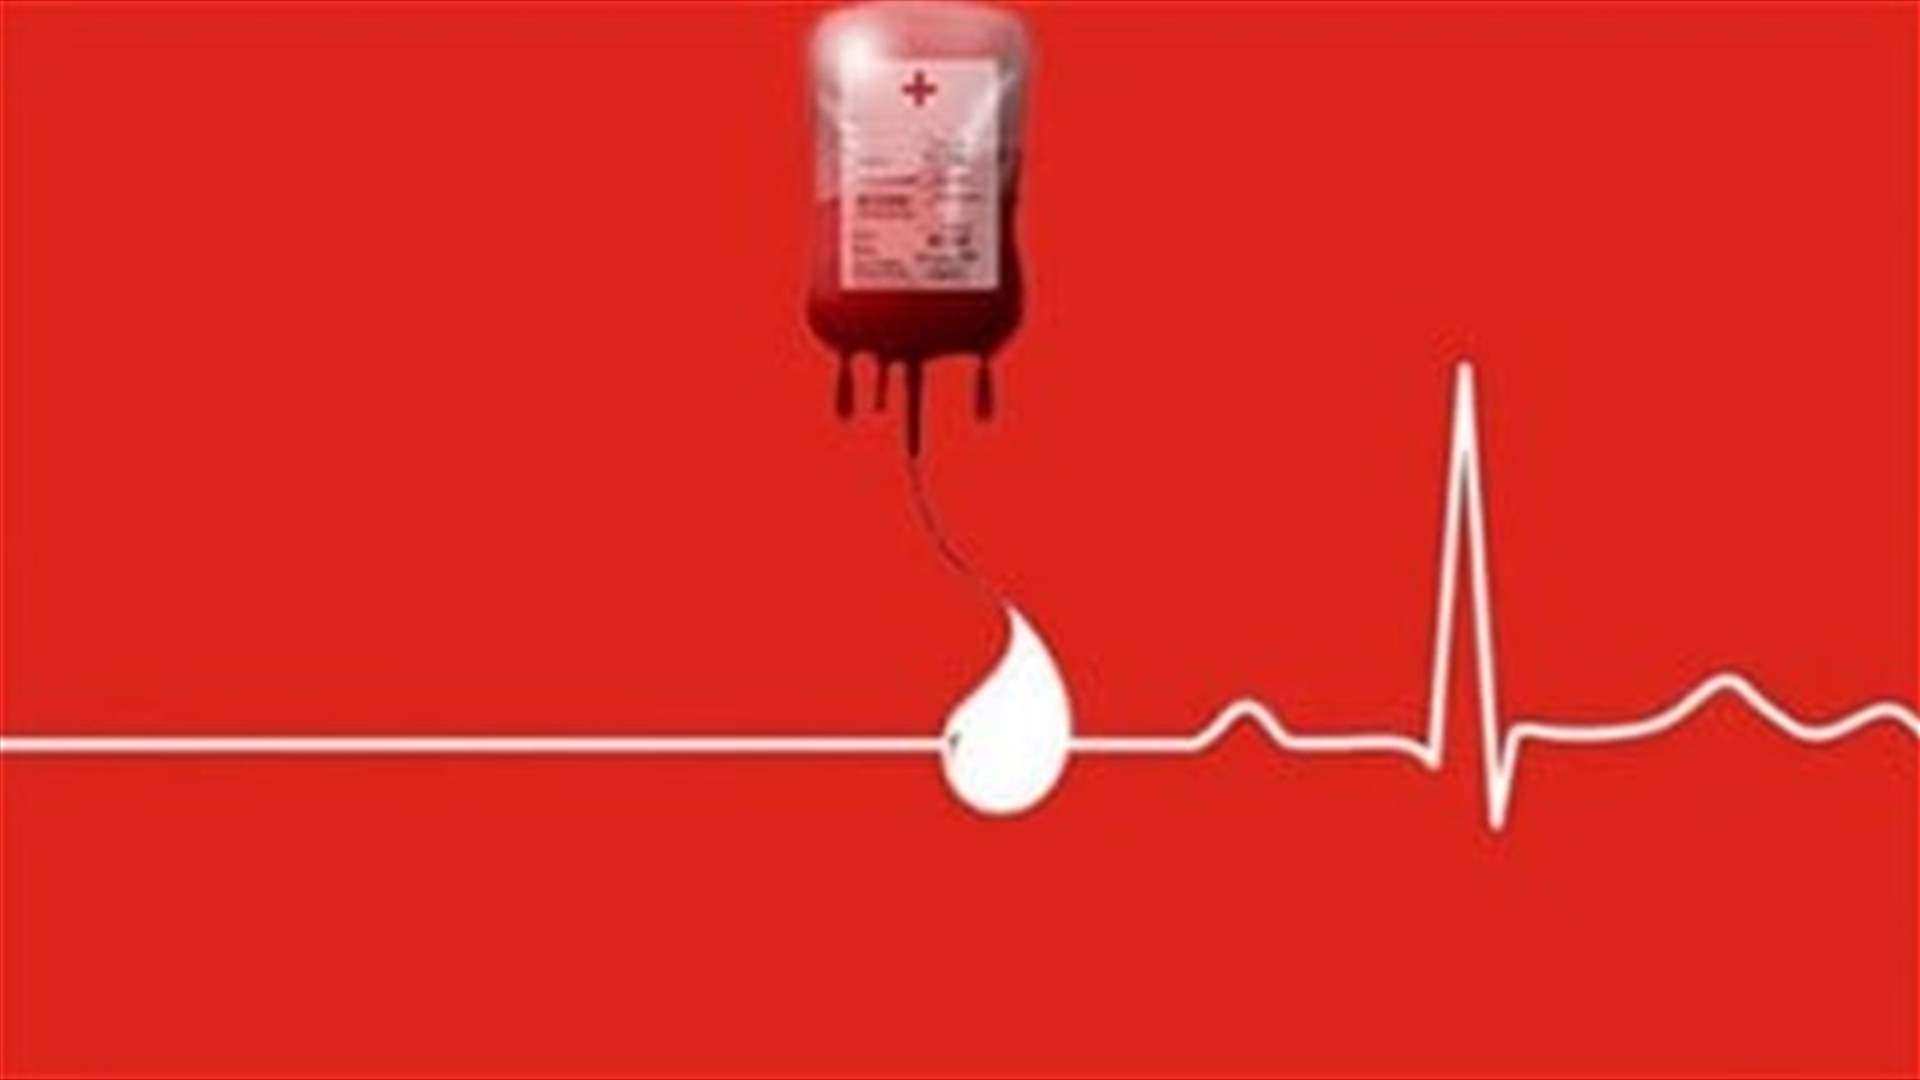 مريض في مستشفى سيدة لبنان بحاجة ماسة إلى وحدة دم من فئة AB-... للمساعدة الرجاء الاتصال على الرقم التالي: 03-736870